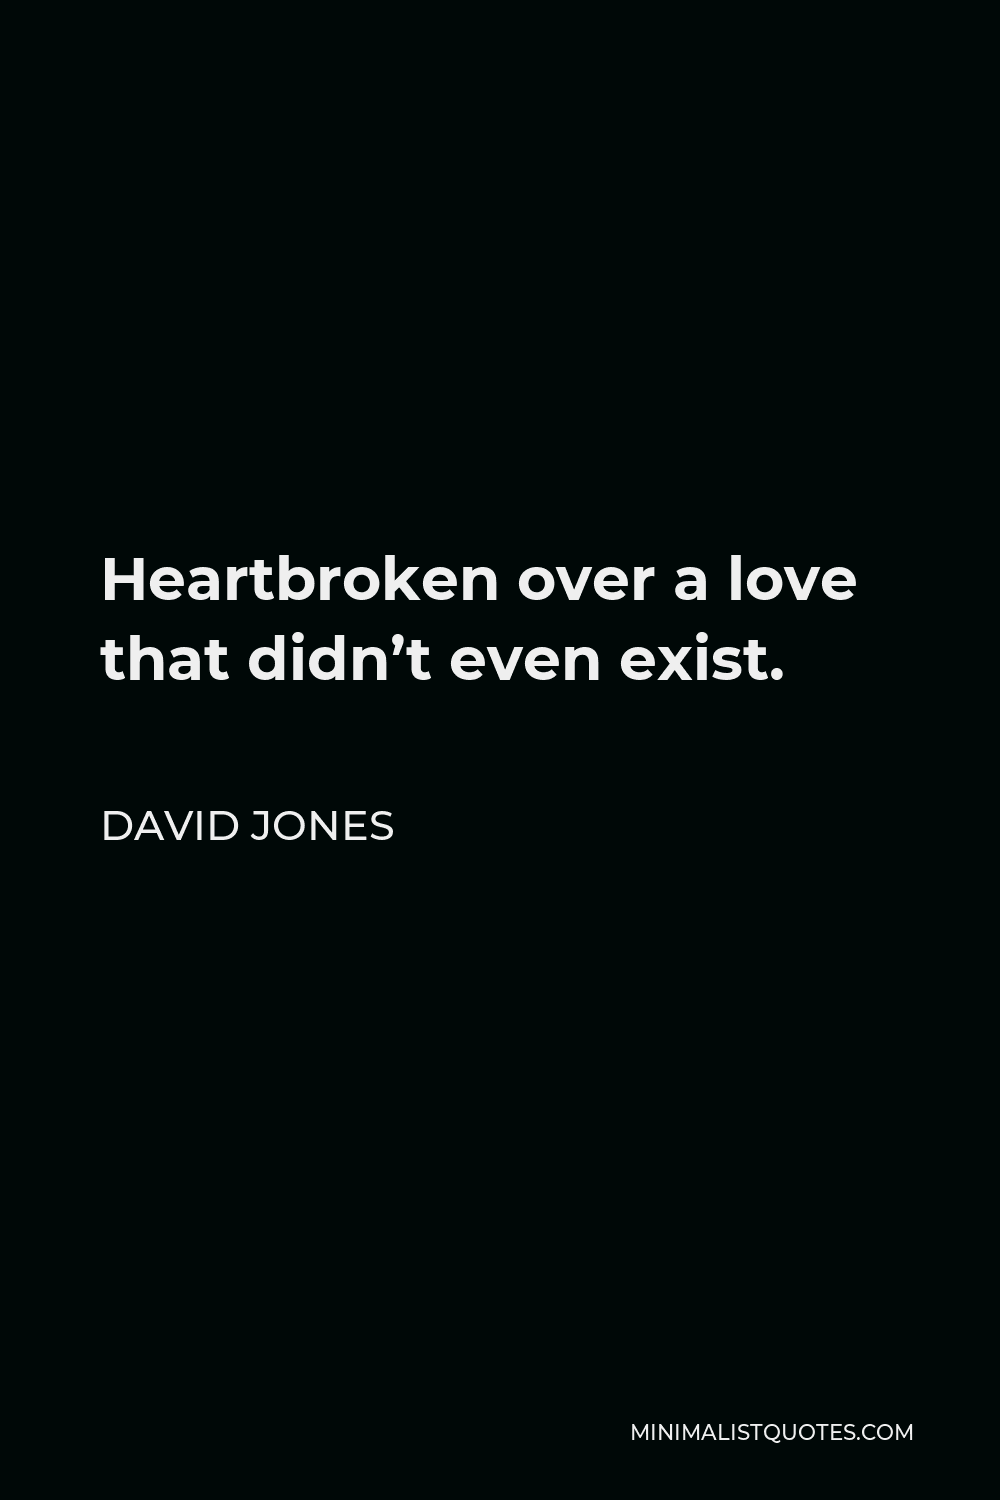 David Jones Quote - Heartbroken over a love that didn’t even exist.